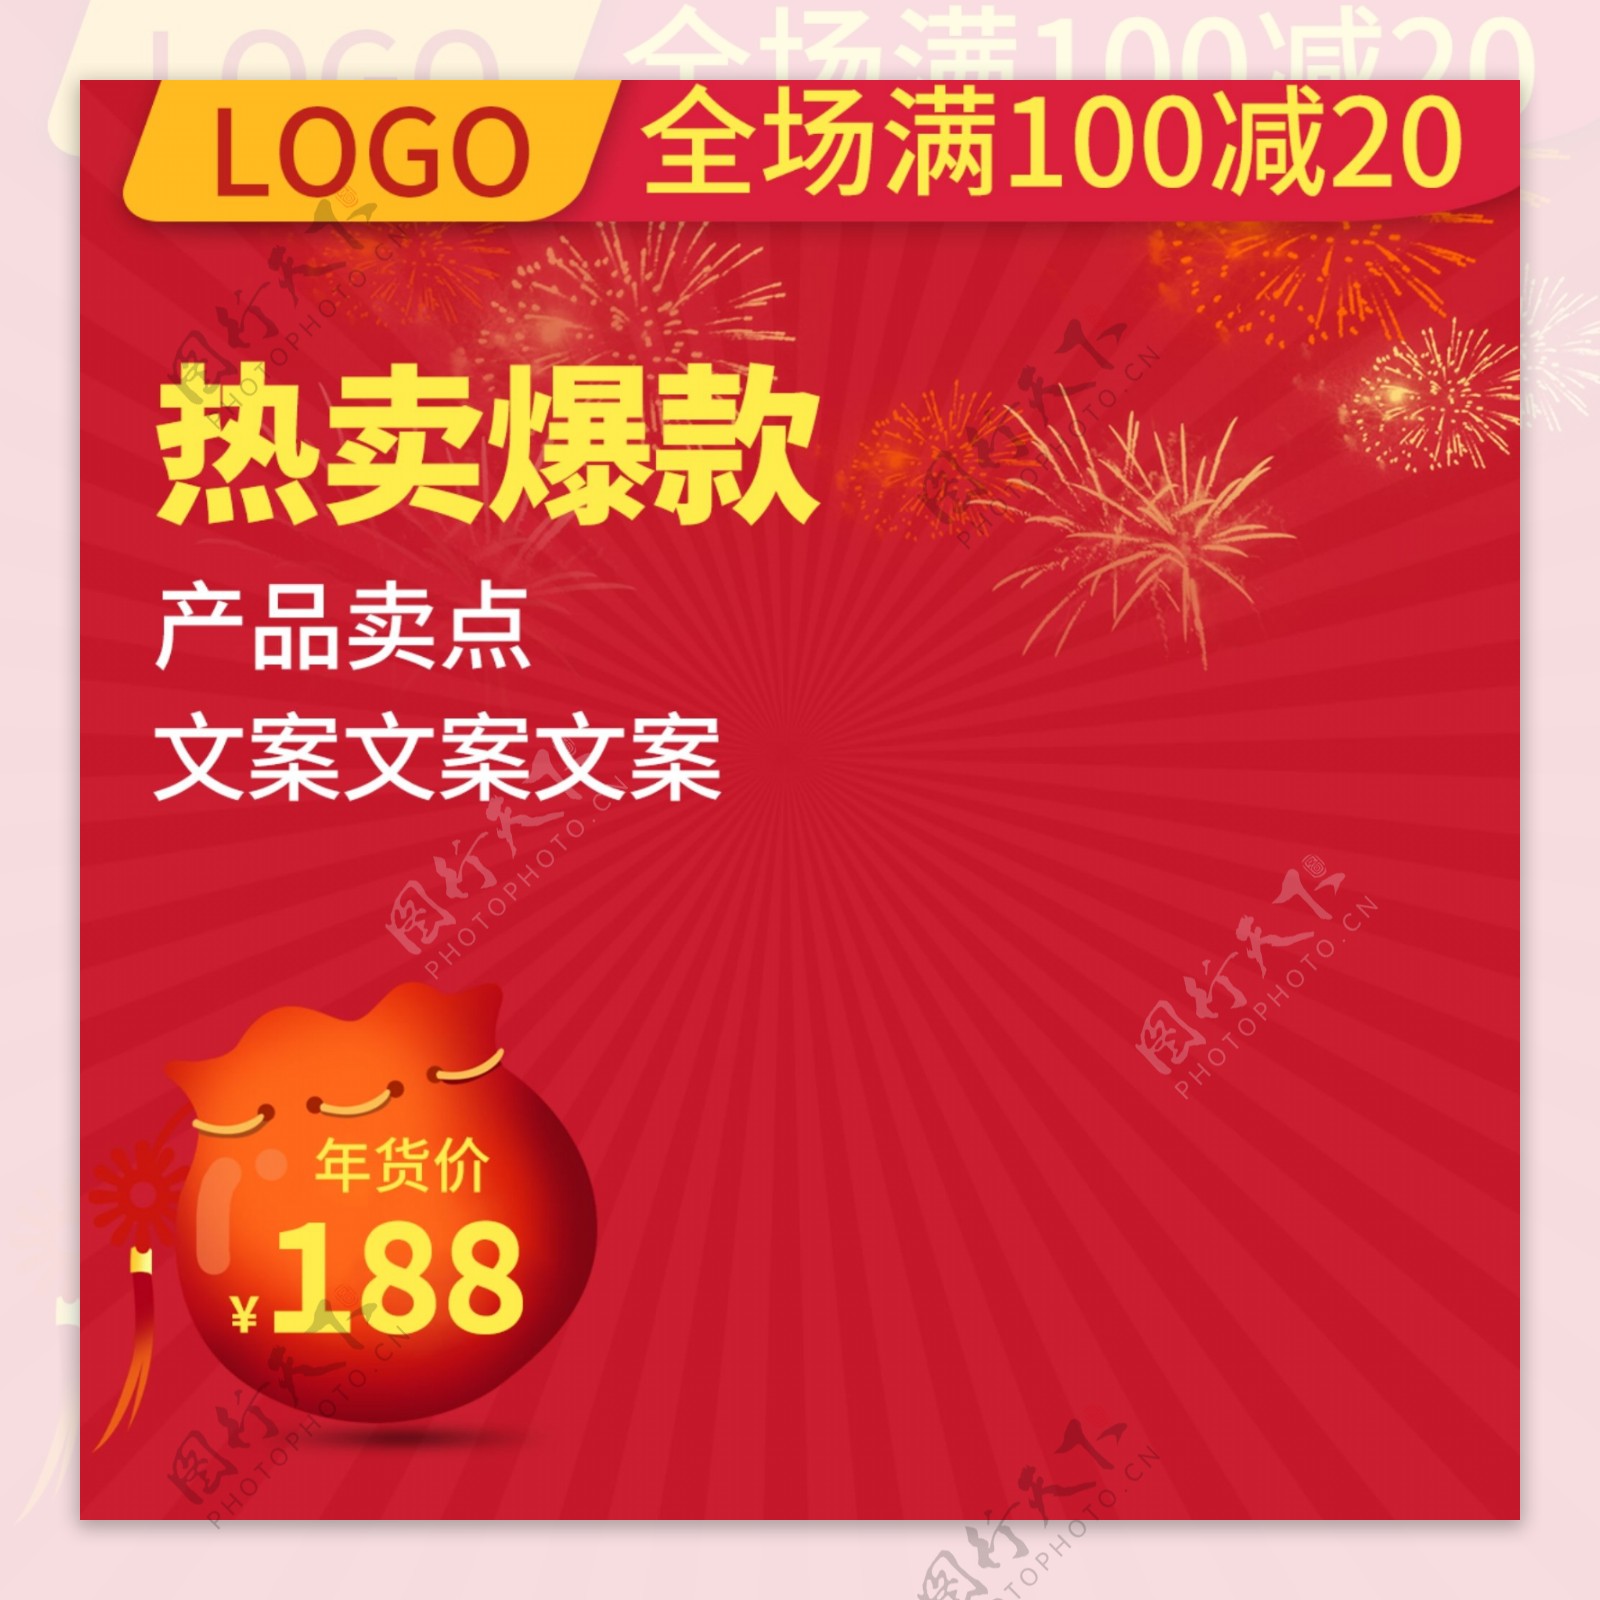 红色喜庆年货节促销活动推广直通车主图模板